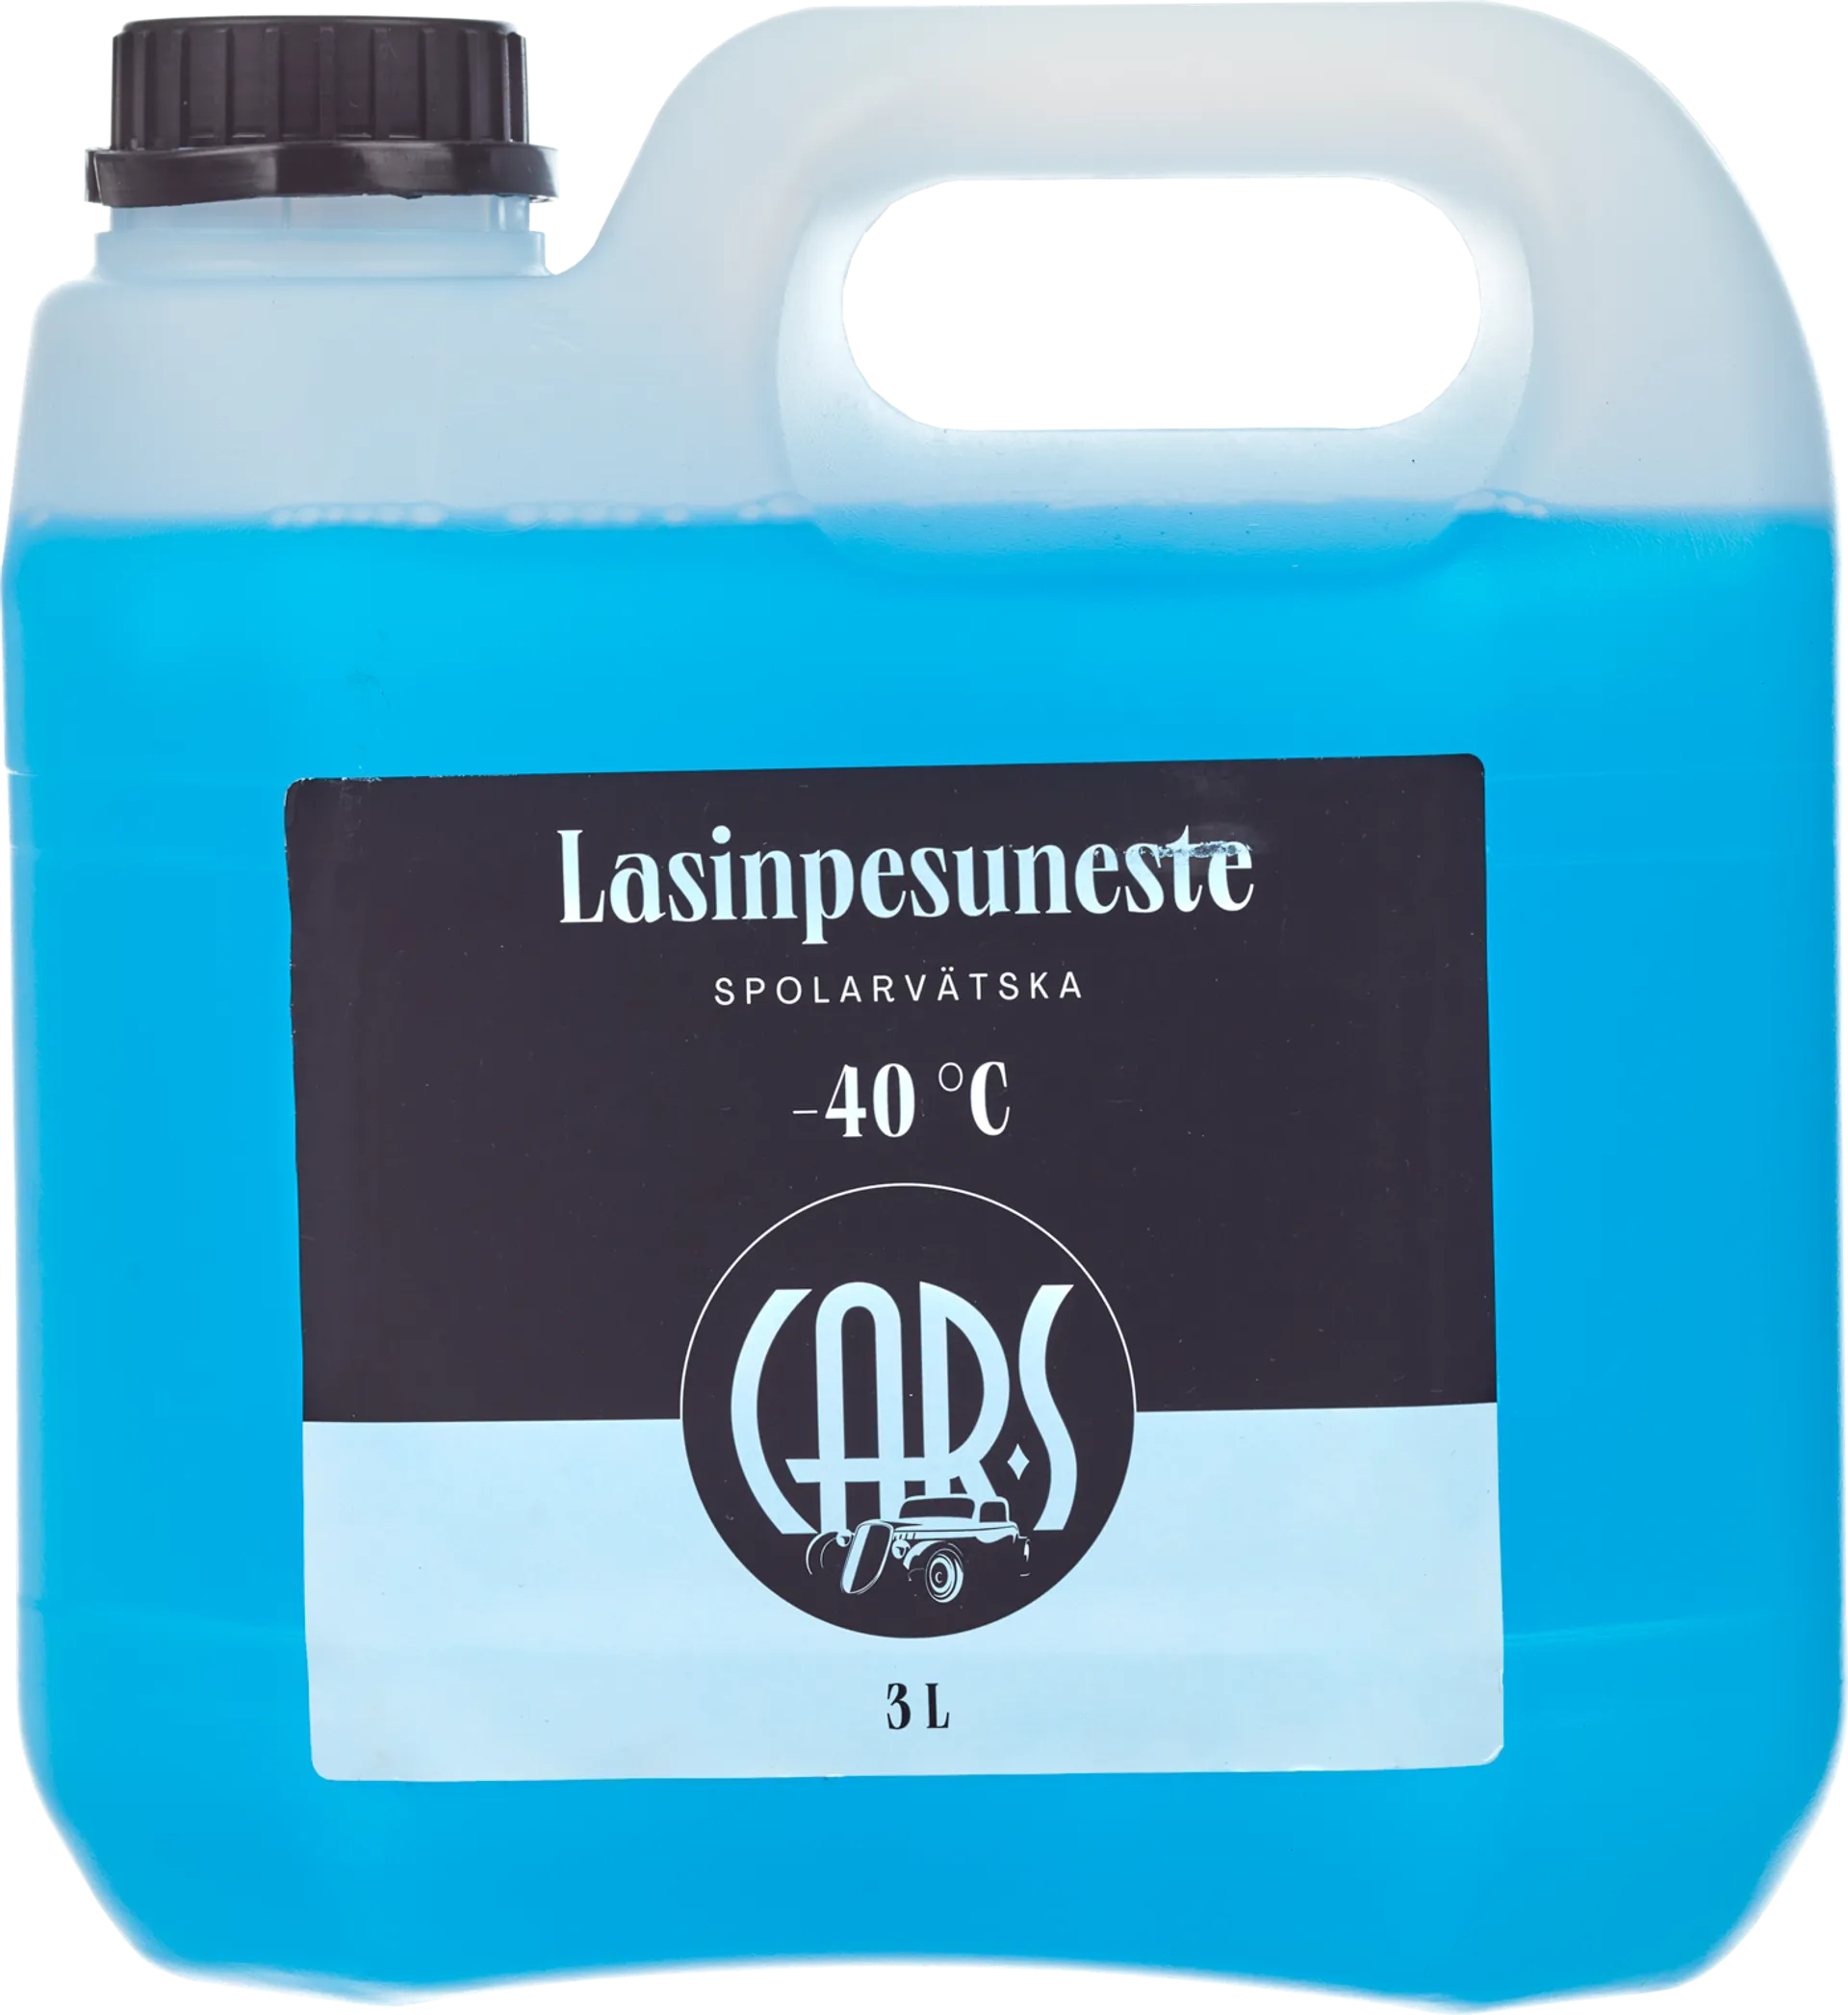 CAR-S Lasinpesuneste 3l -40C